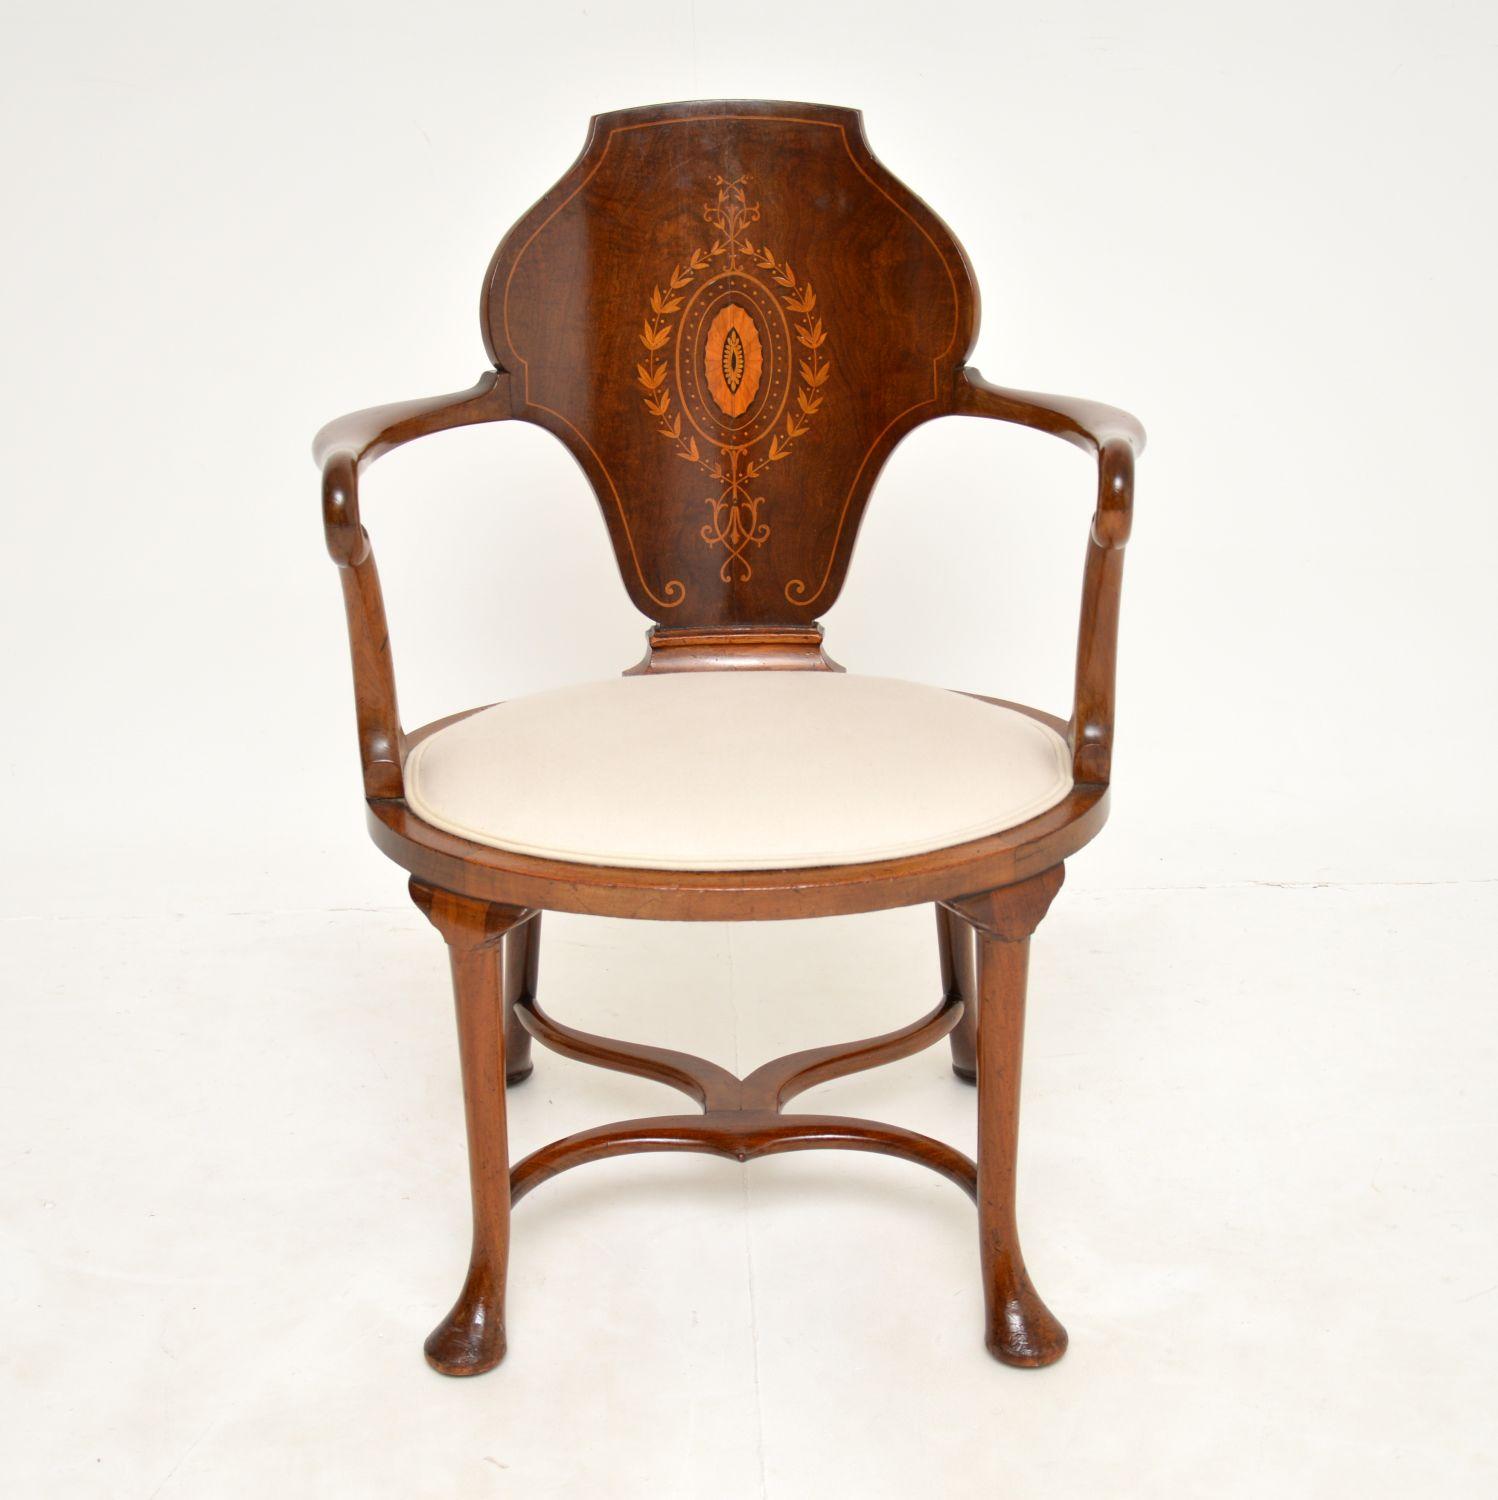 Ein hervorragender antiker edwardianischer Sessel. Sie wurde in England hergestellt und stammt aus der Zeit um 1890-1900.

Er ist von sehr guter Qualität und hat ein wunderschönes Design. Das Gestell ist nicht zu imposant, mit einer schön geformten